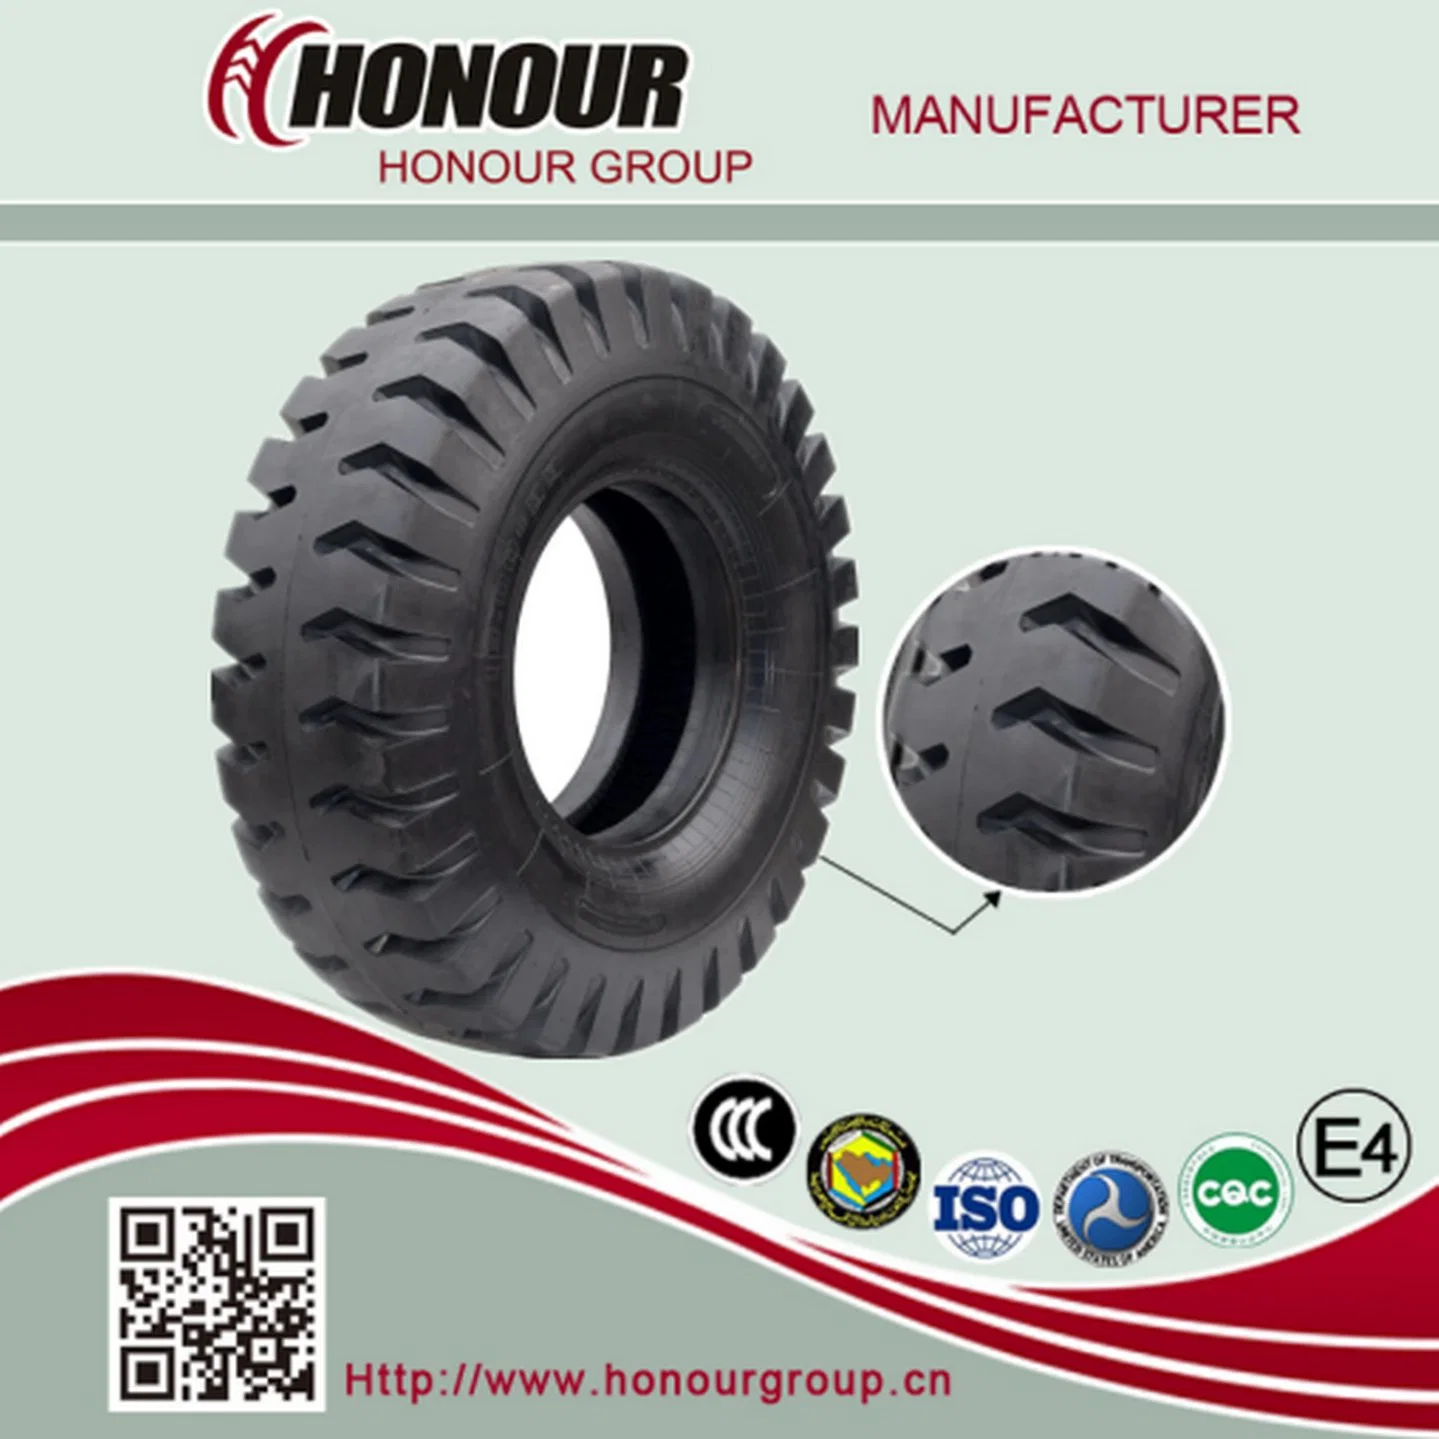 Giant Bias E4 Reifen Honor High Quality Port Tire OTR Reifen für Grader Loader Dozer Dump Truck Reifen (2100-25, 1400-24)